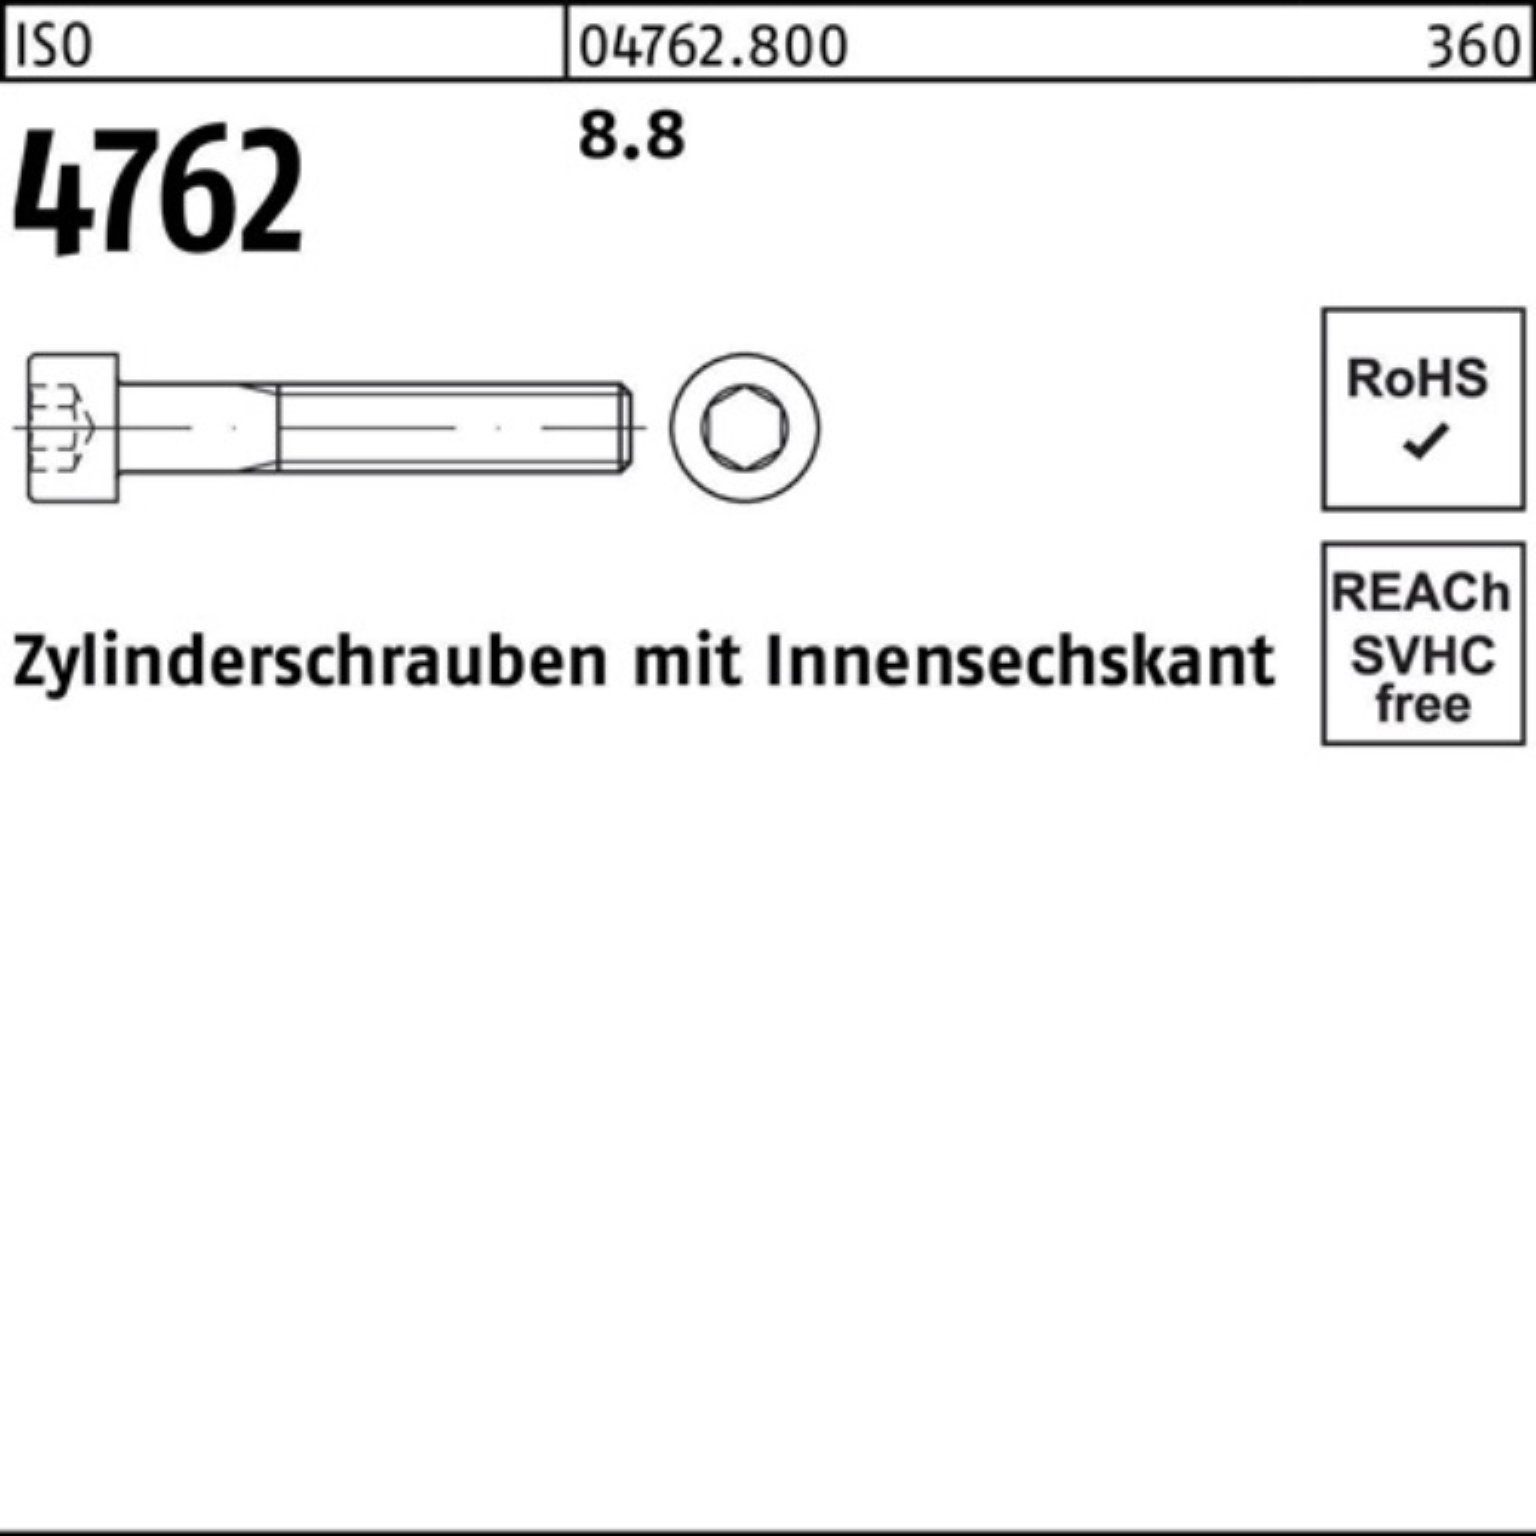 ISO Zylinderschraube Innen-6kt 4762 Zylinderschraube I Pack Reyher M5x 500 Stück 8.8 500er 22